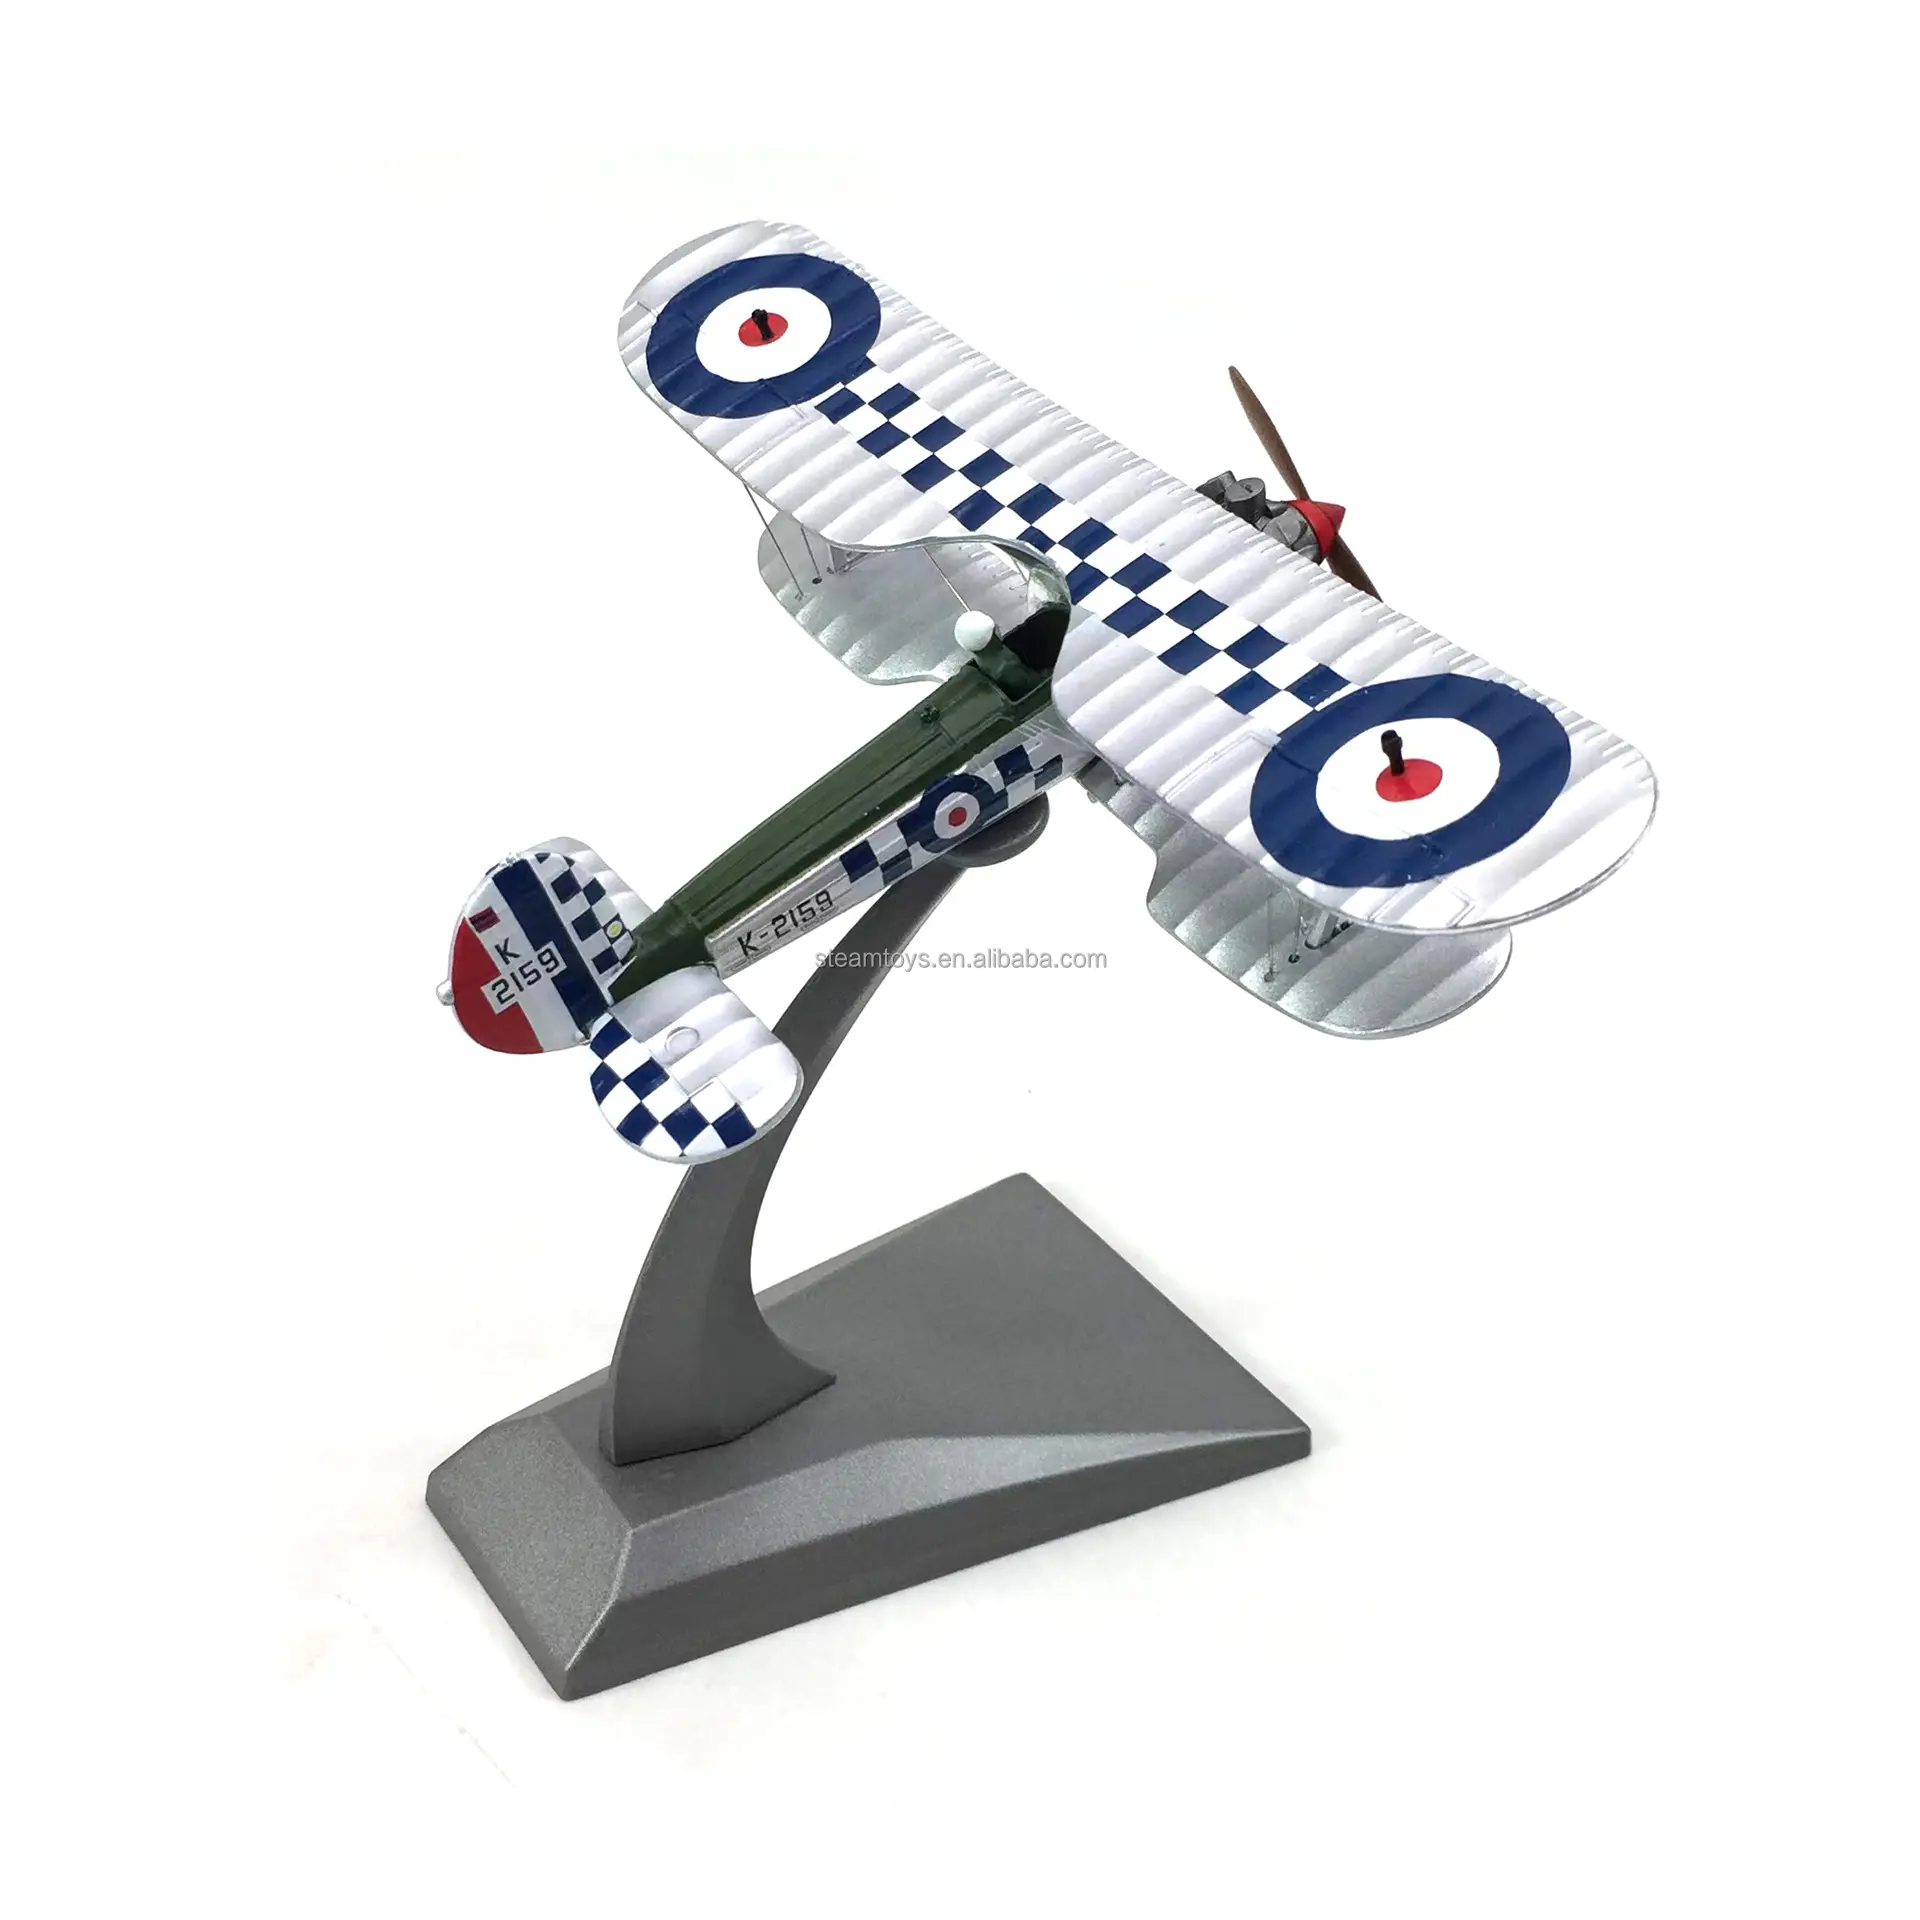 Bristol Bulldog Mini Figuren Metall Classic Flugzeug Modell British Royal Air Force für Vintage Flugzeug Modells ammler